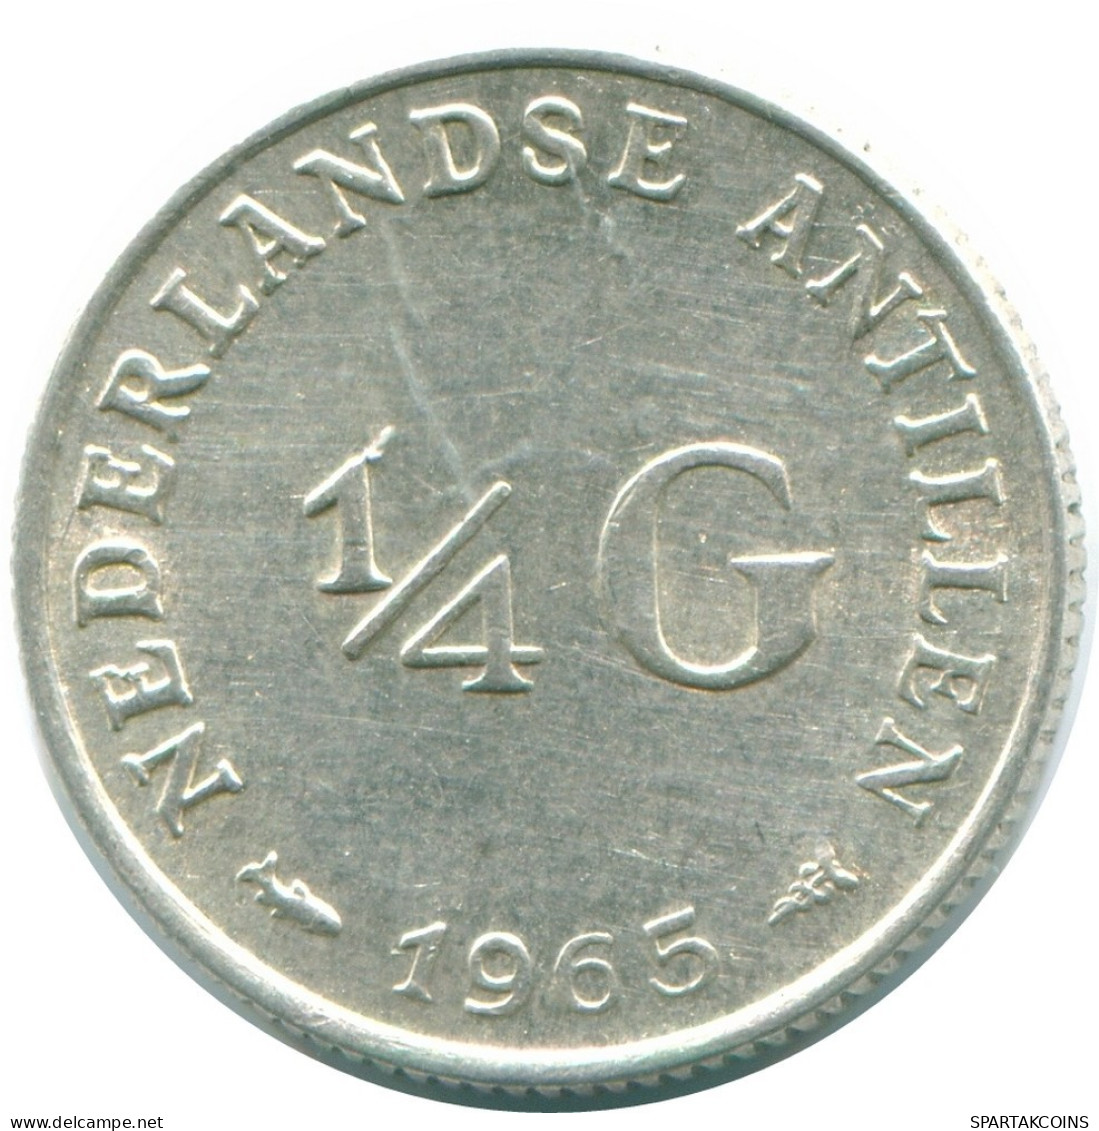 1/4 GULDEN 1965 NIEDERLÄNDISCHE ANTILLEN SILBER Koloniale Münze #NL11305.4.D.A - Niederländische Antillen